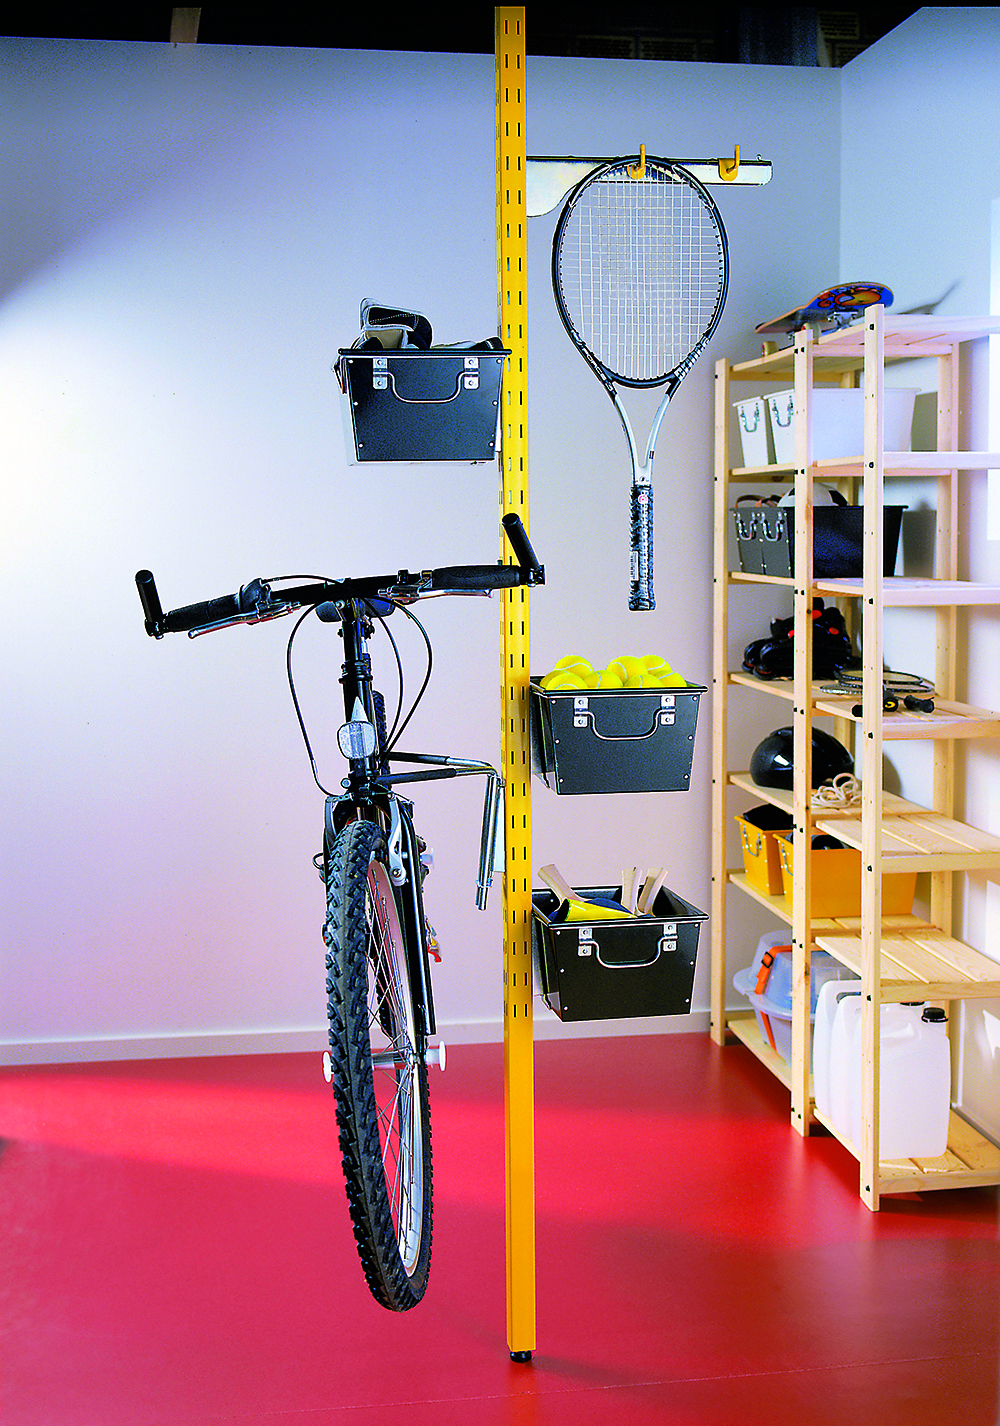 Stojina Broder z lakovanej ocele je súčasťou úložného systému, ktorý zahŕňa dvojotvorové háky a konzoly vhodné na zavesenie bicyklov a iných športových potrieb. Zdroj: Ikea